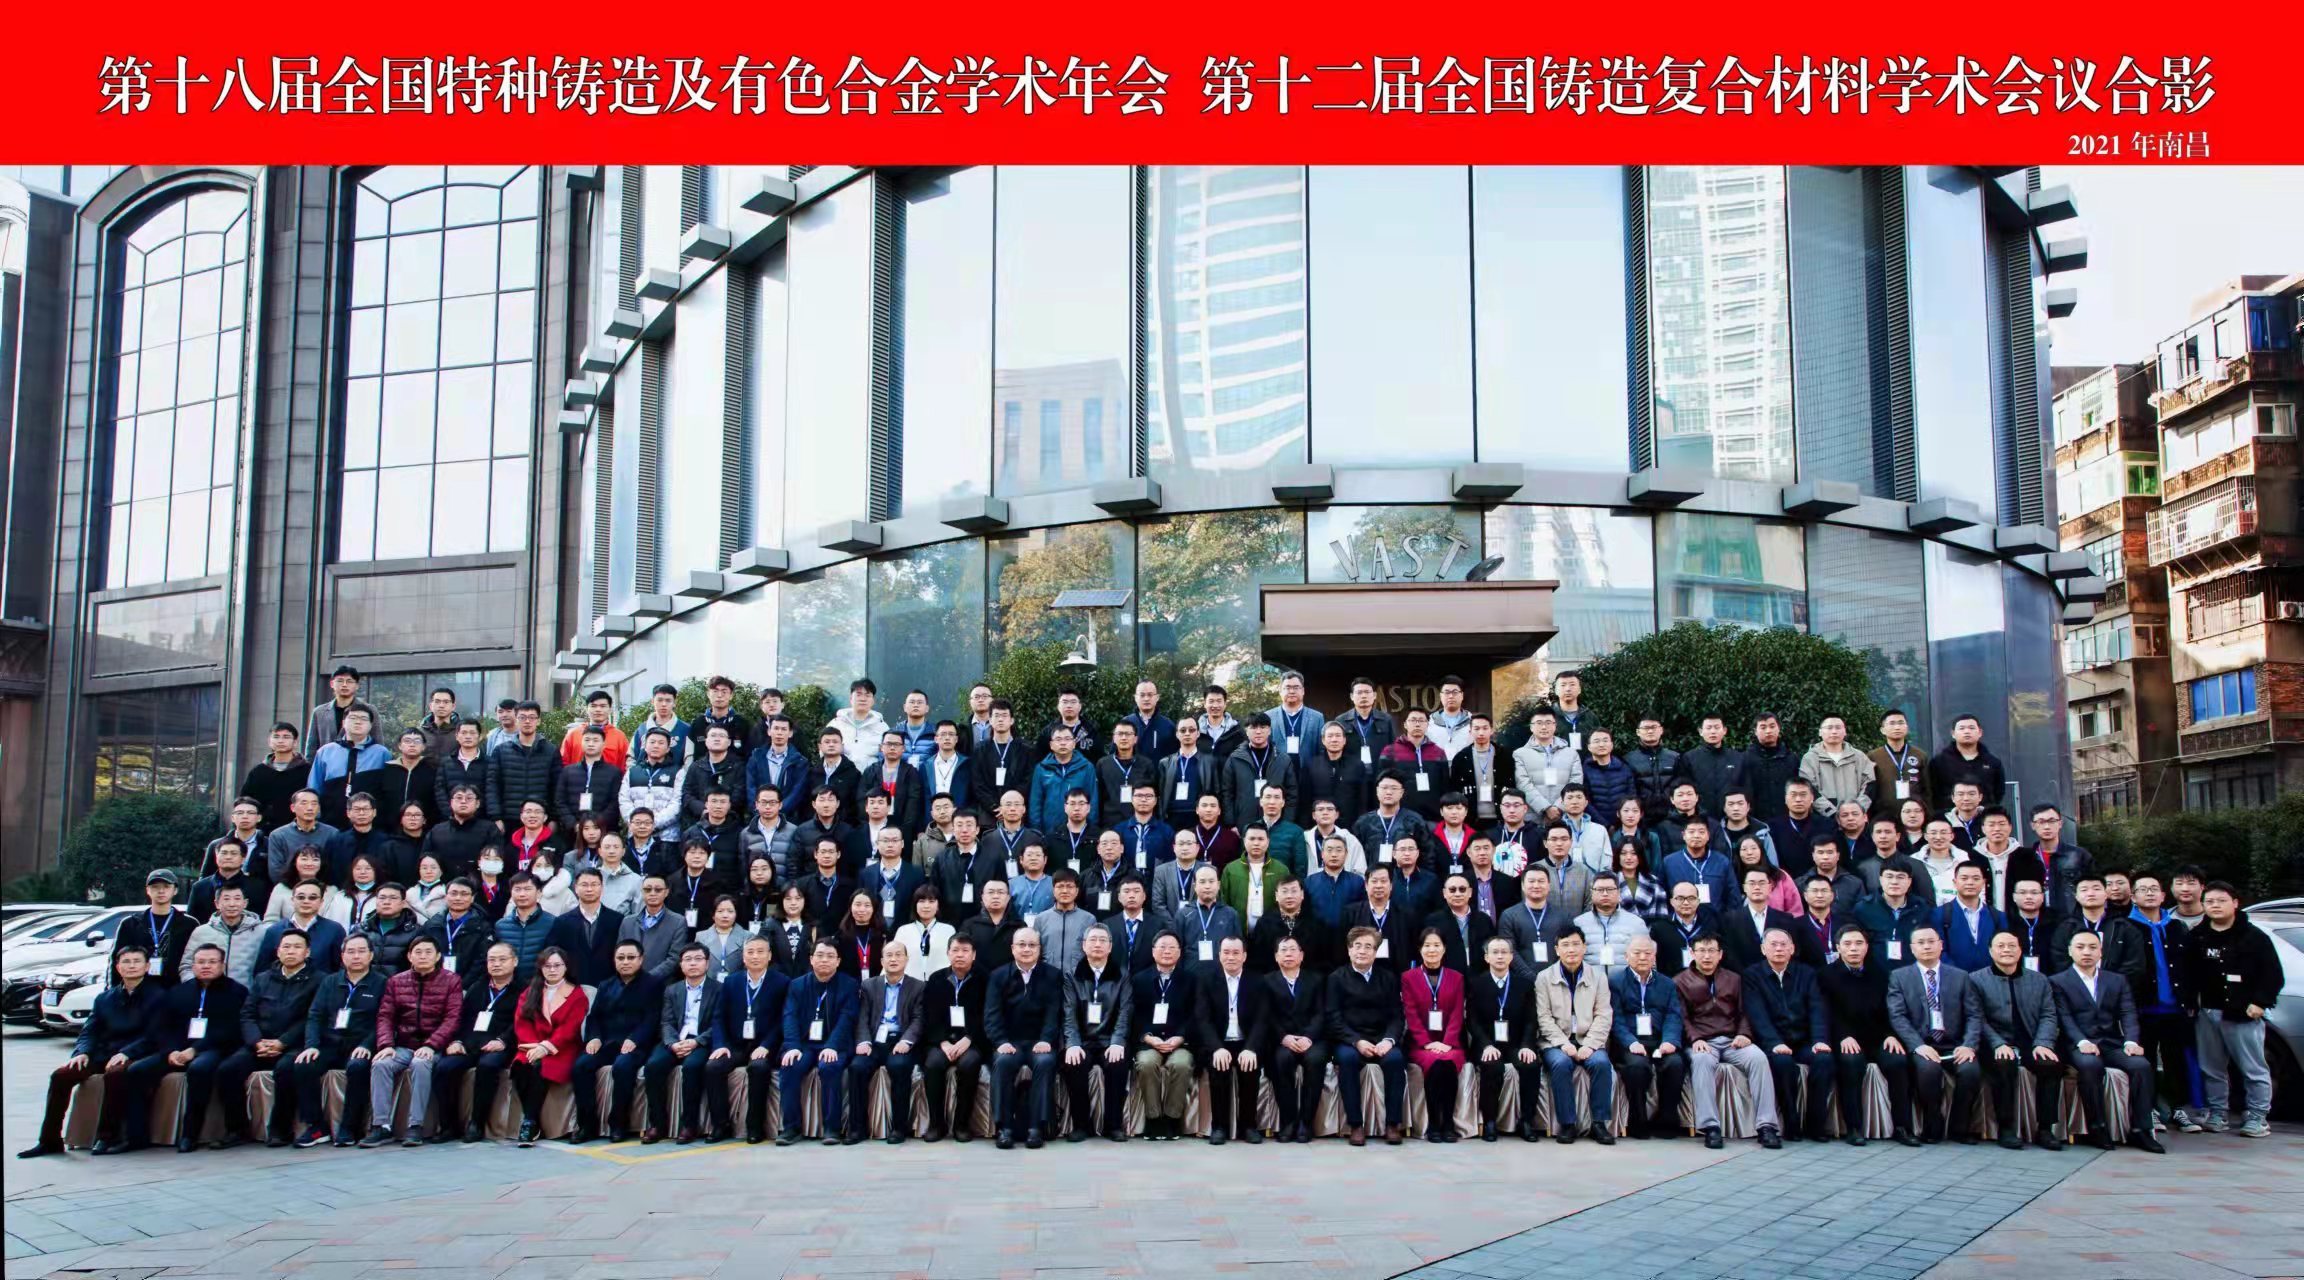 Генеральный менеджер г-н Ли посетил промышленную конференцию по литью